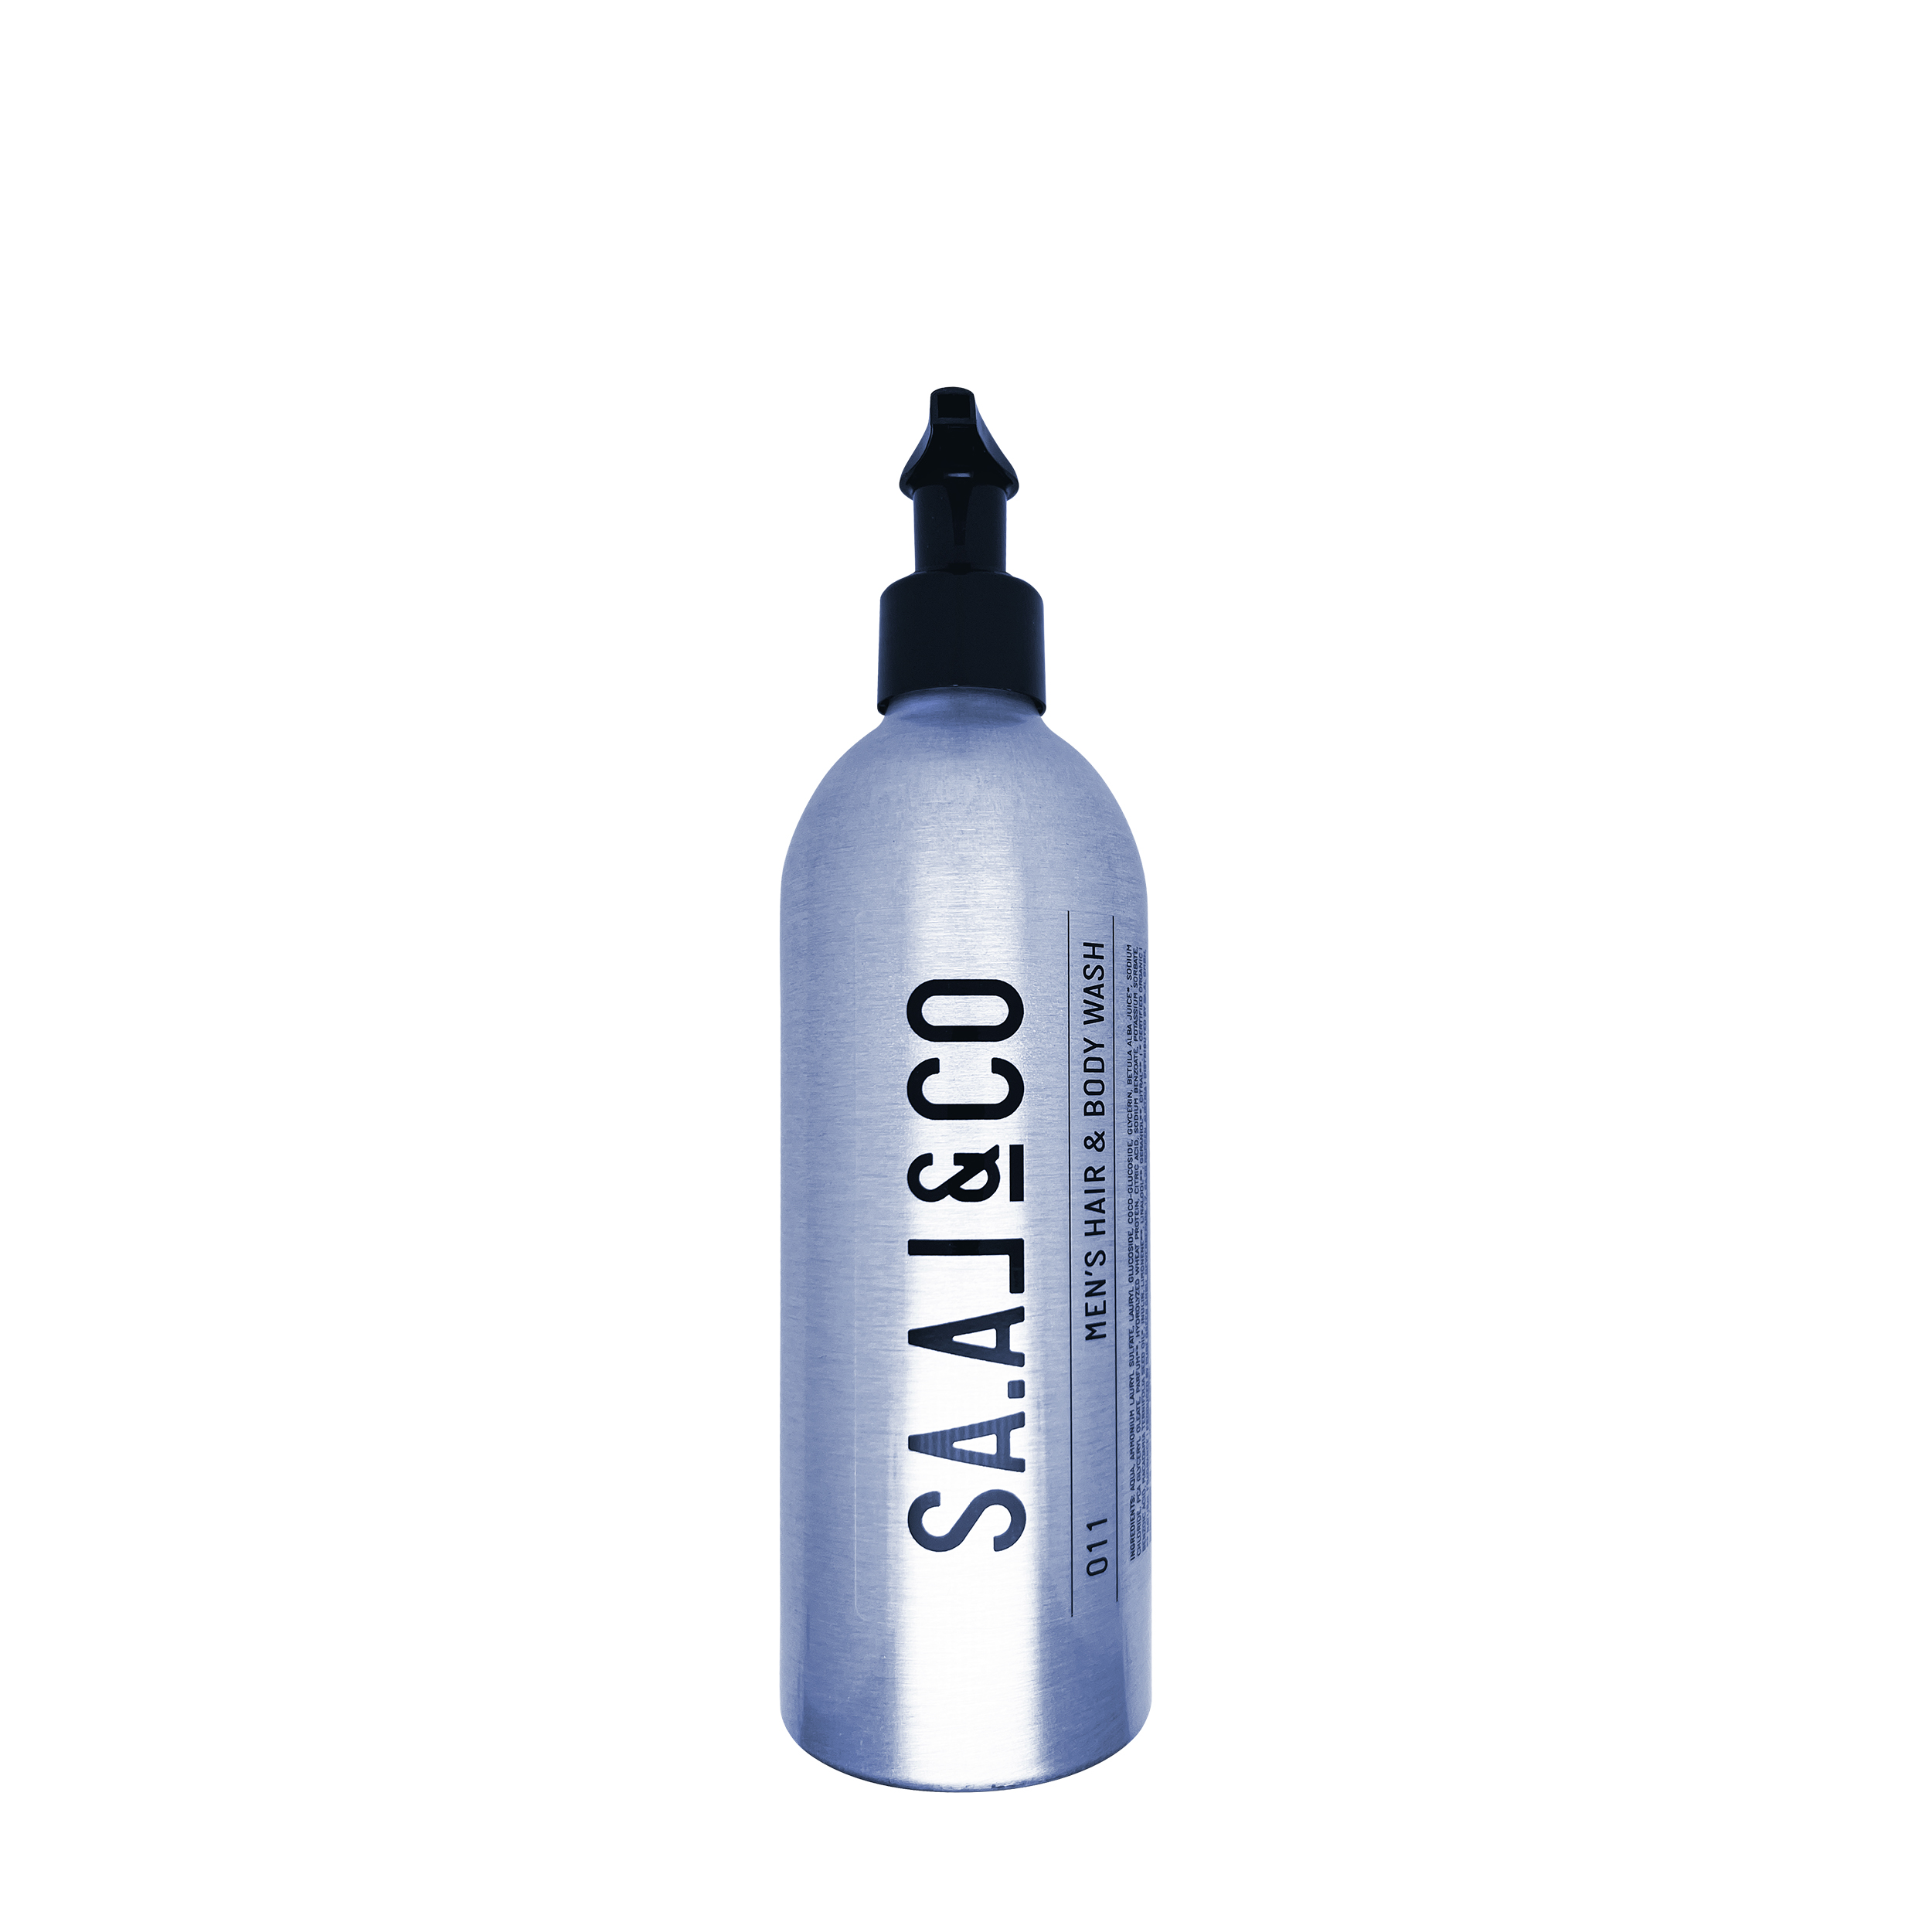 SA.AL&CO SA.AL&CO 011 Men's Hair & Body Wash 350 ml - очищающий гель для тела и волос 350 мл